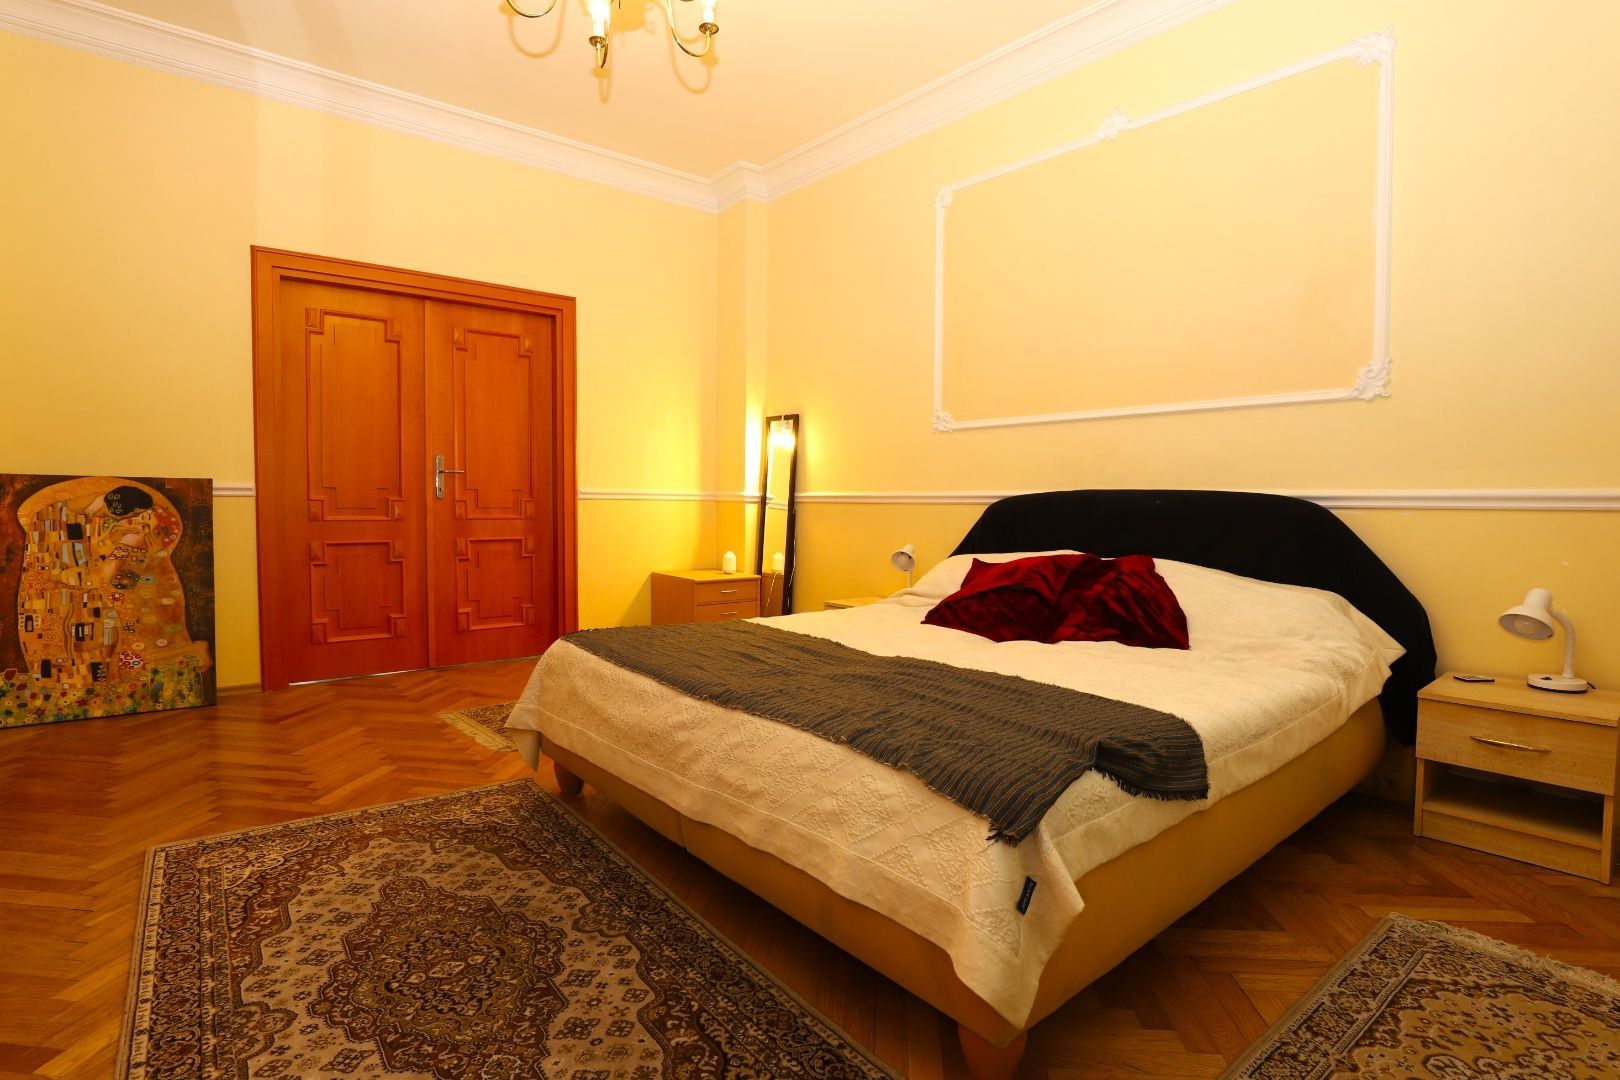 DAHLEH-Na prenájom 2-izbový staromestský byt na Zochovej ulici v Bratislave